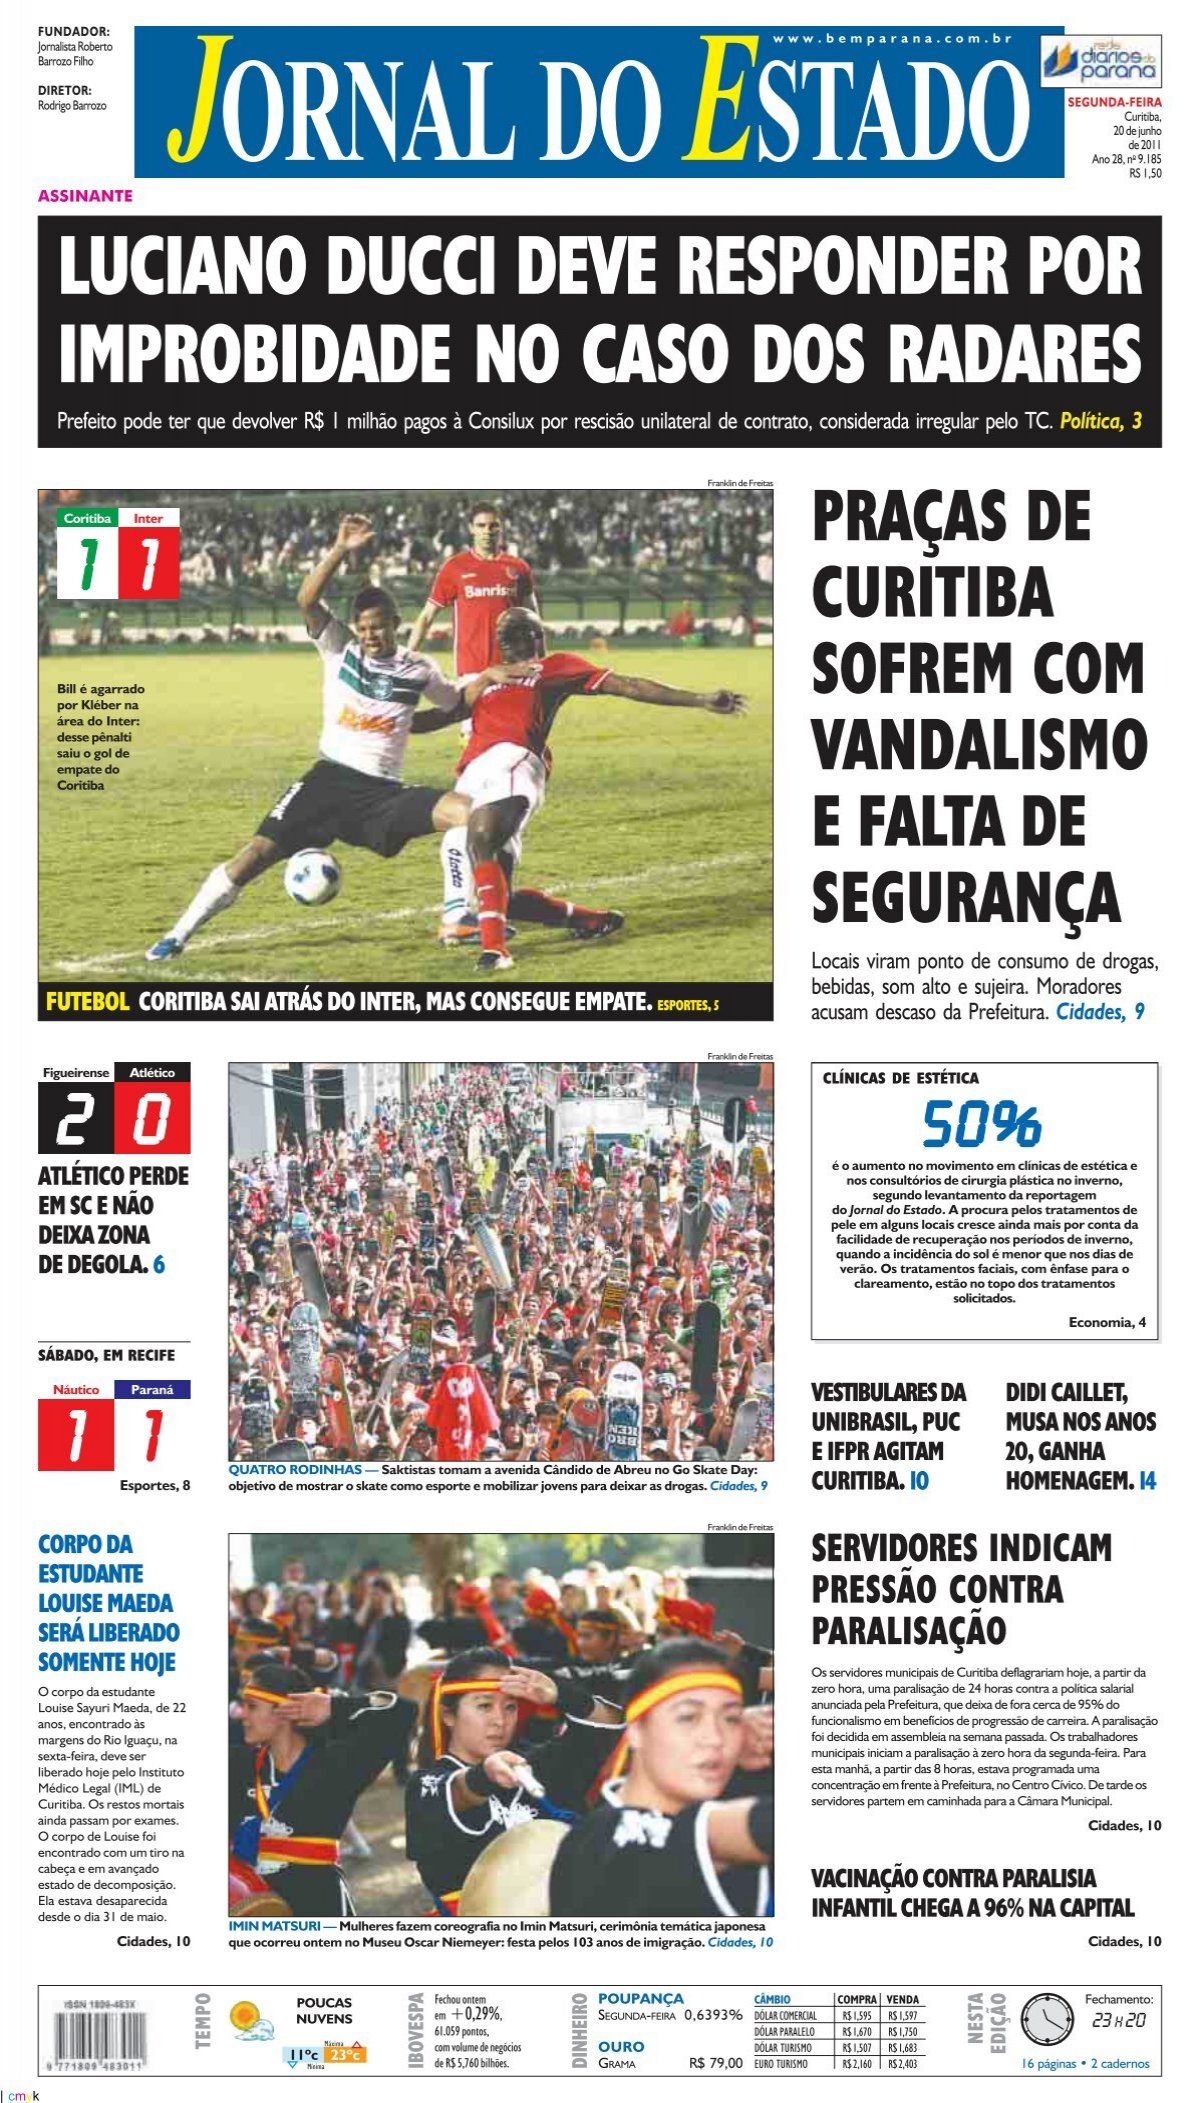 Académica-FC Porto B, 1-1: Estudantes voltam empatar e complicam luta pela  subida de divisão - Futebol - Jornal Record